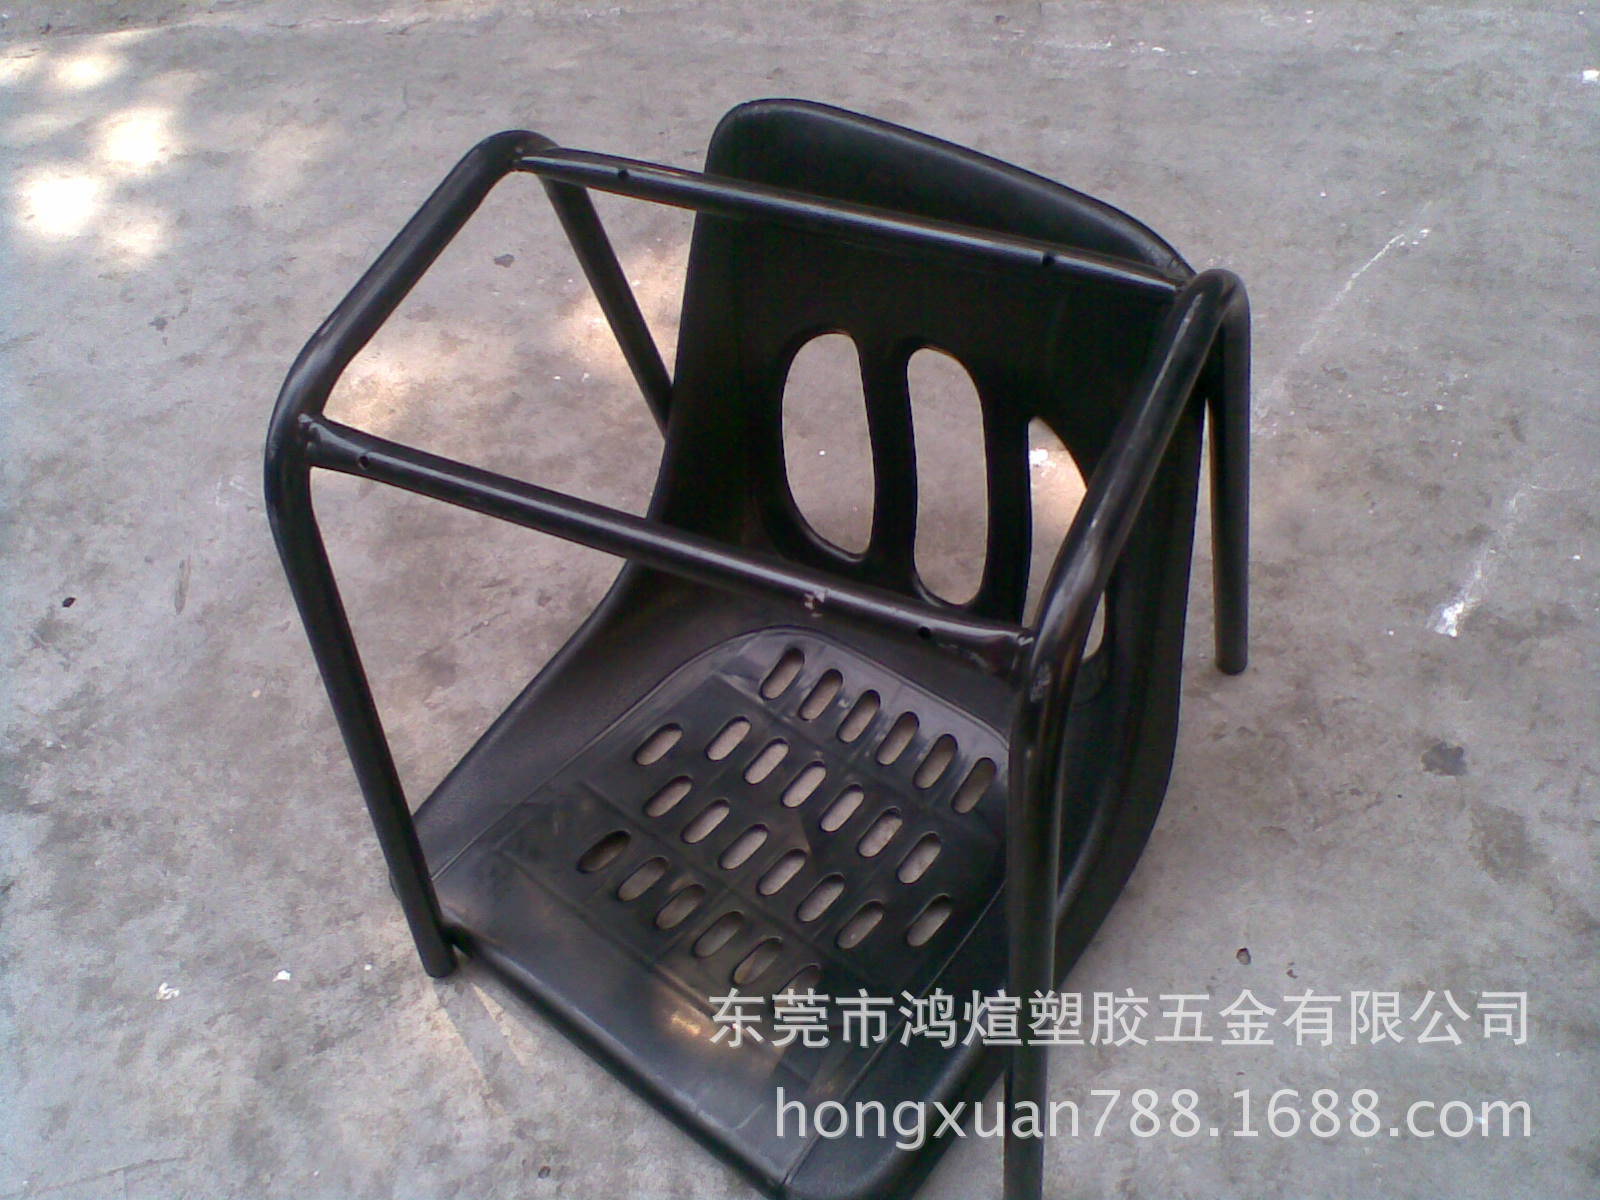 供应塑胶防静电椅 铁脚防静电靠背椅 可订制各种高度加固款式